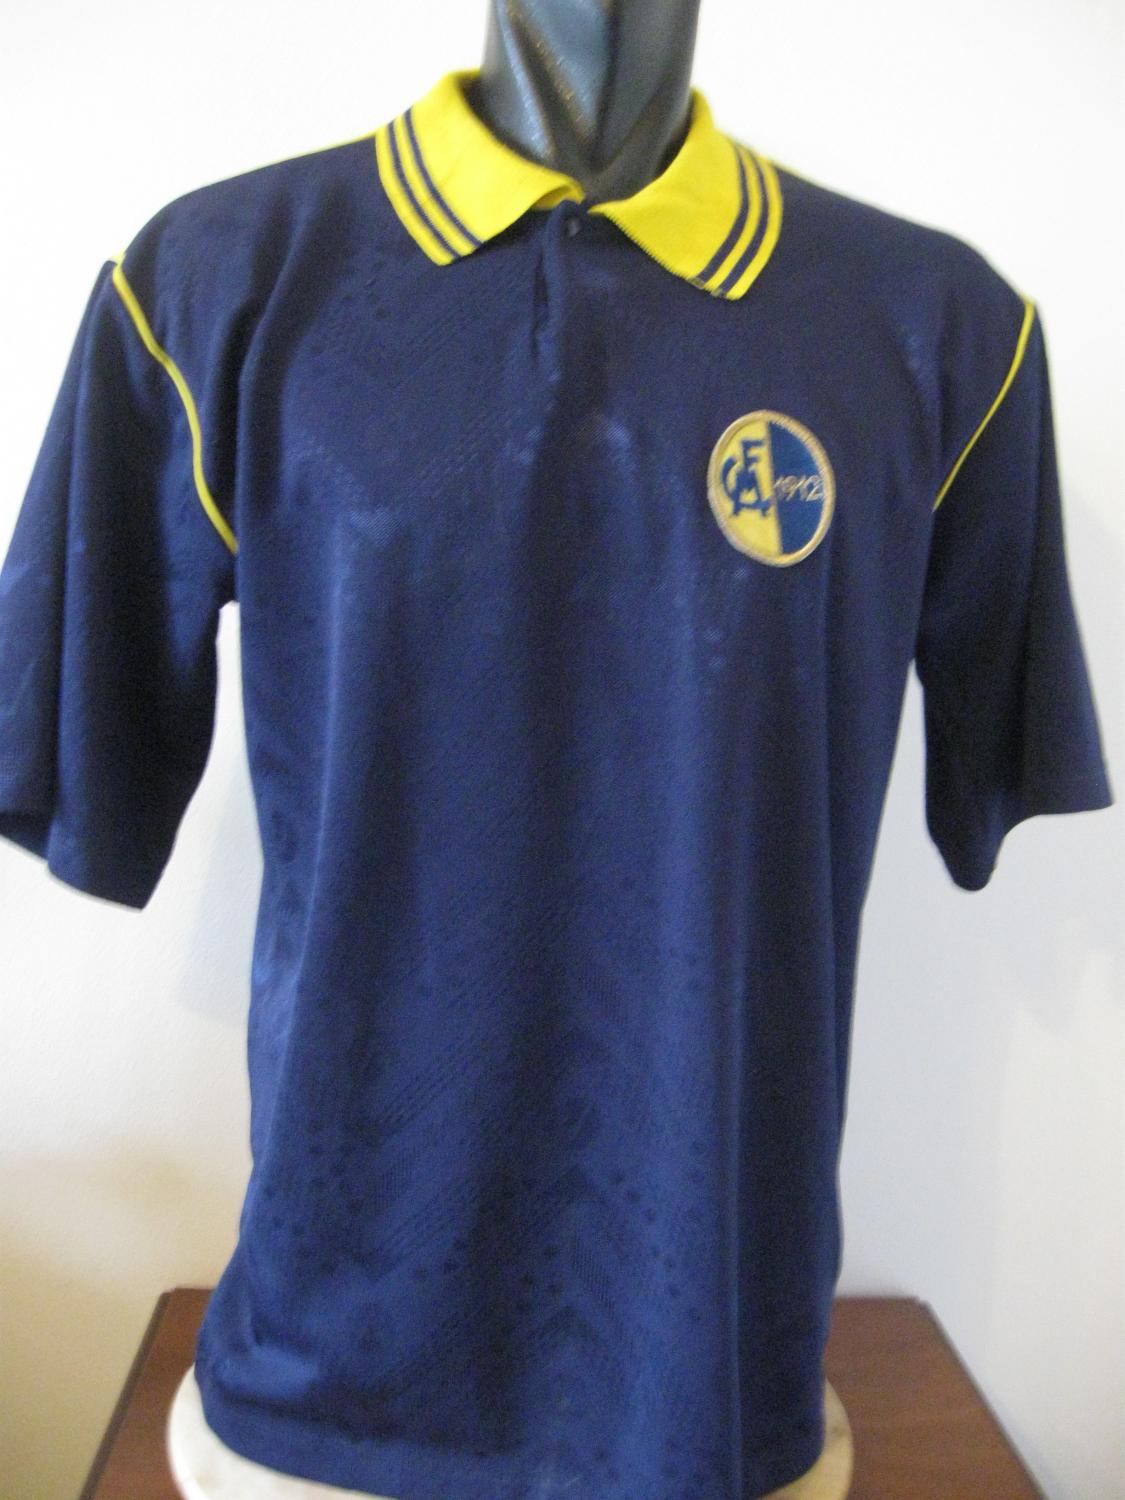 Modena FC Away football shirt 1989 - 1990.